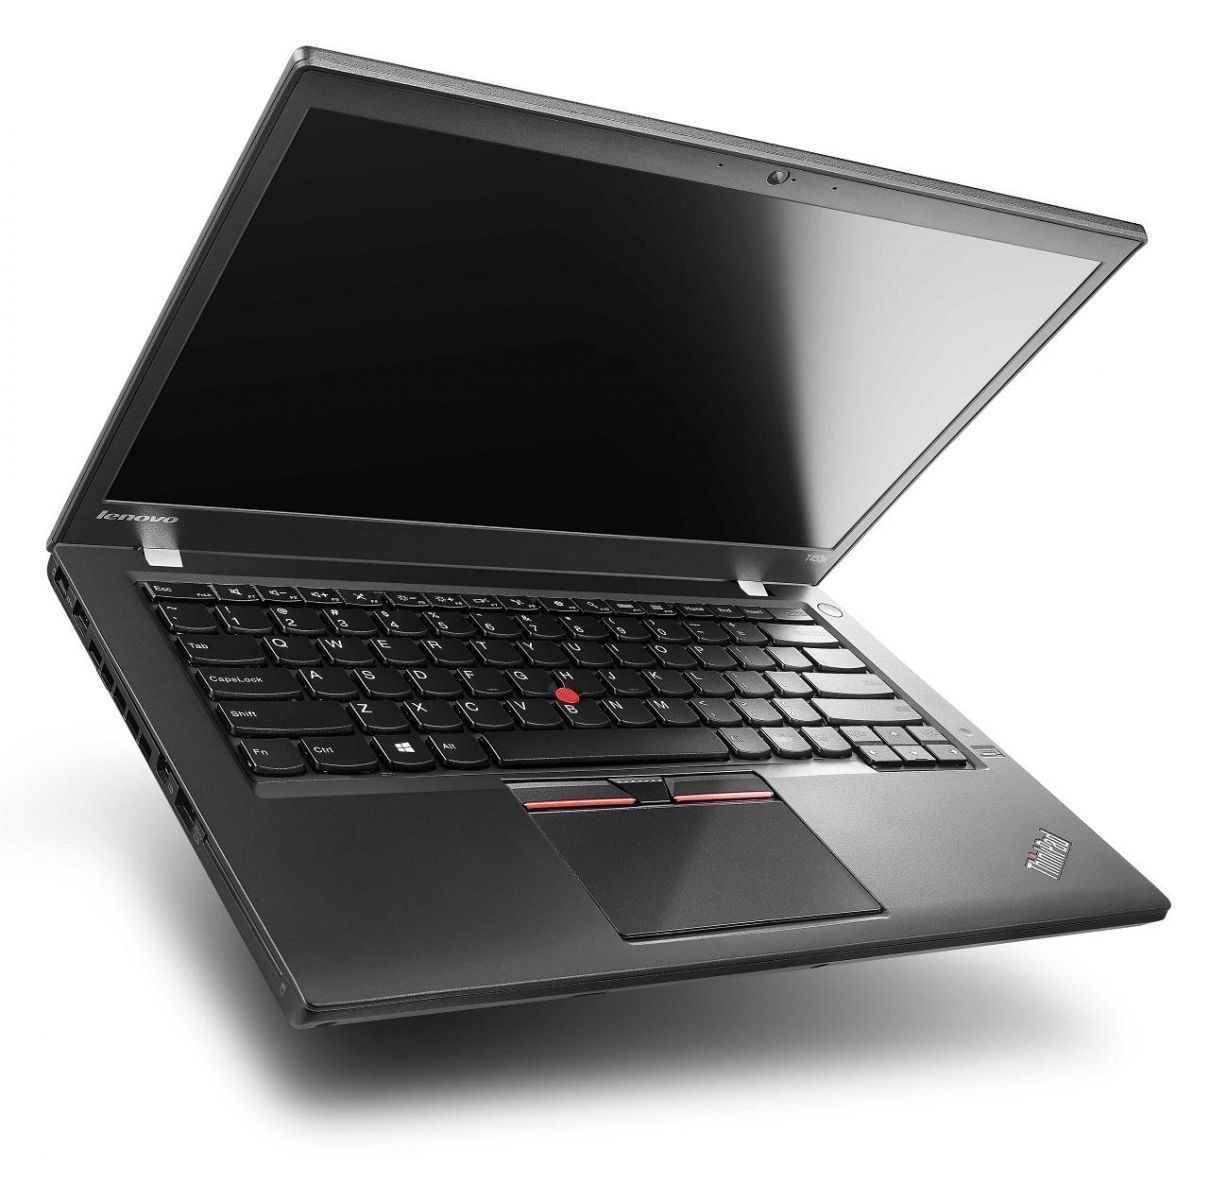 Thiết kế Lenovo ThinkPad T430s